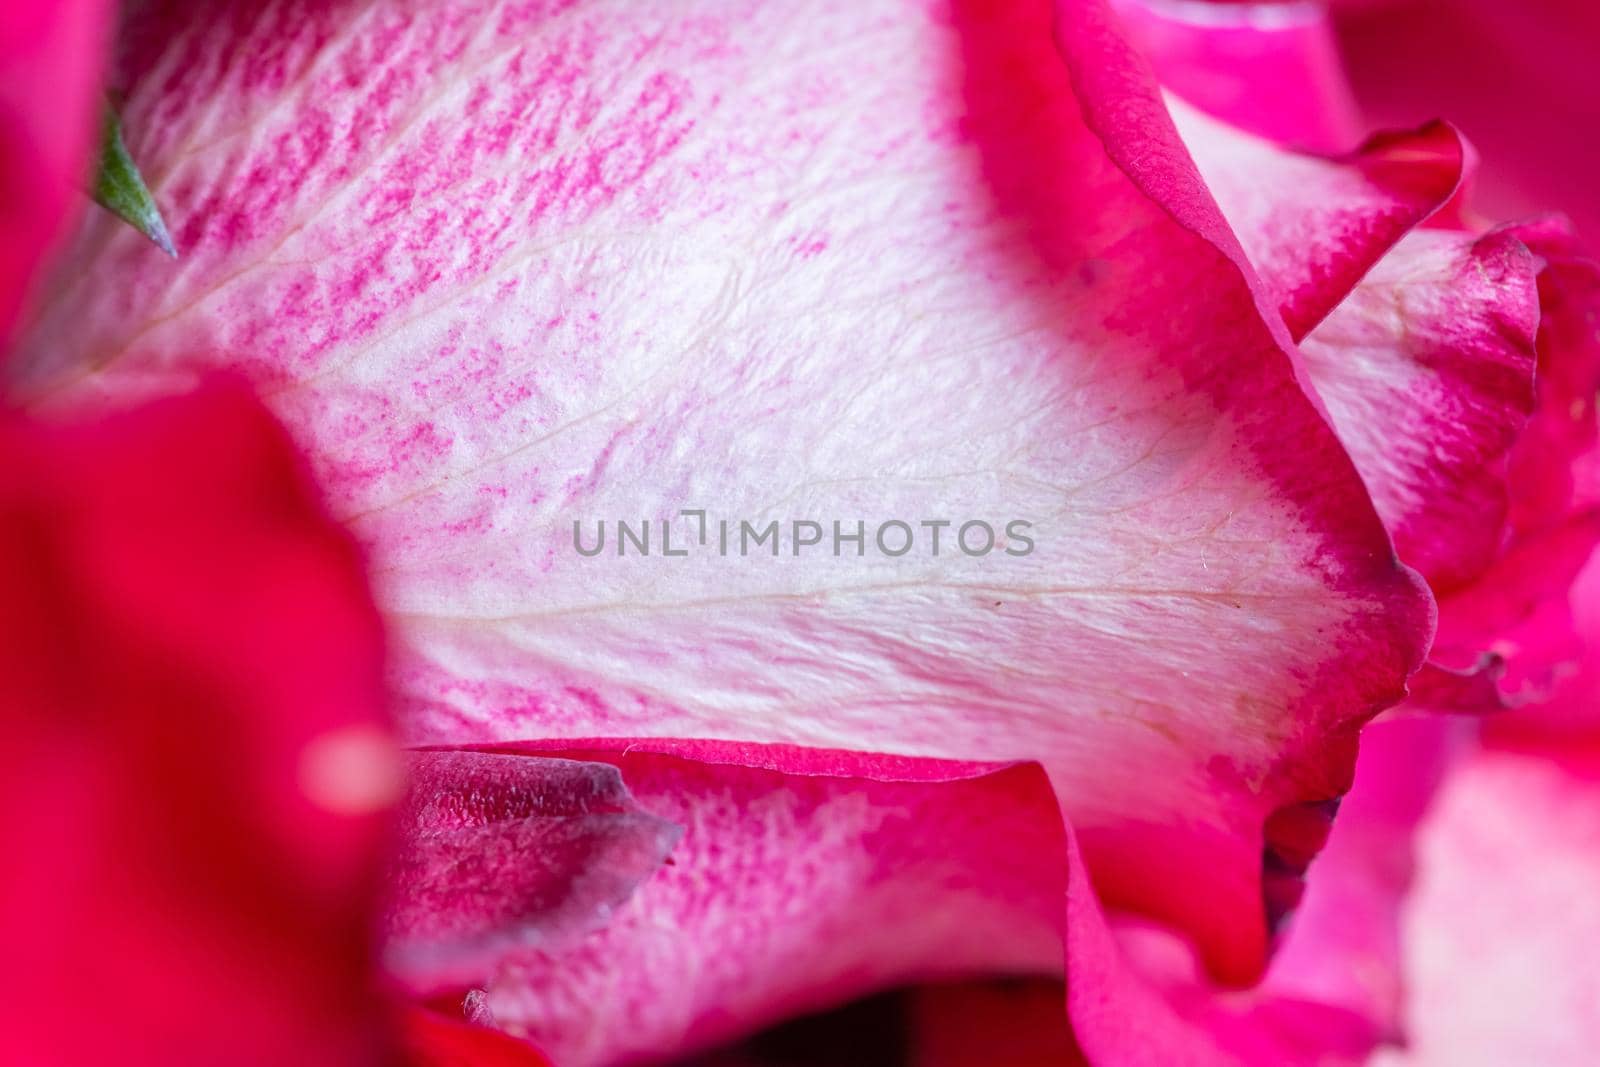 Red rose petal texture, close-up,blur, soft selective focus.